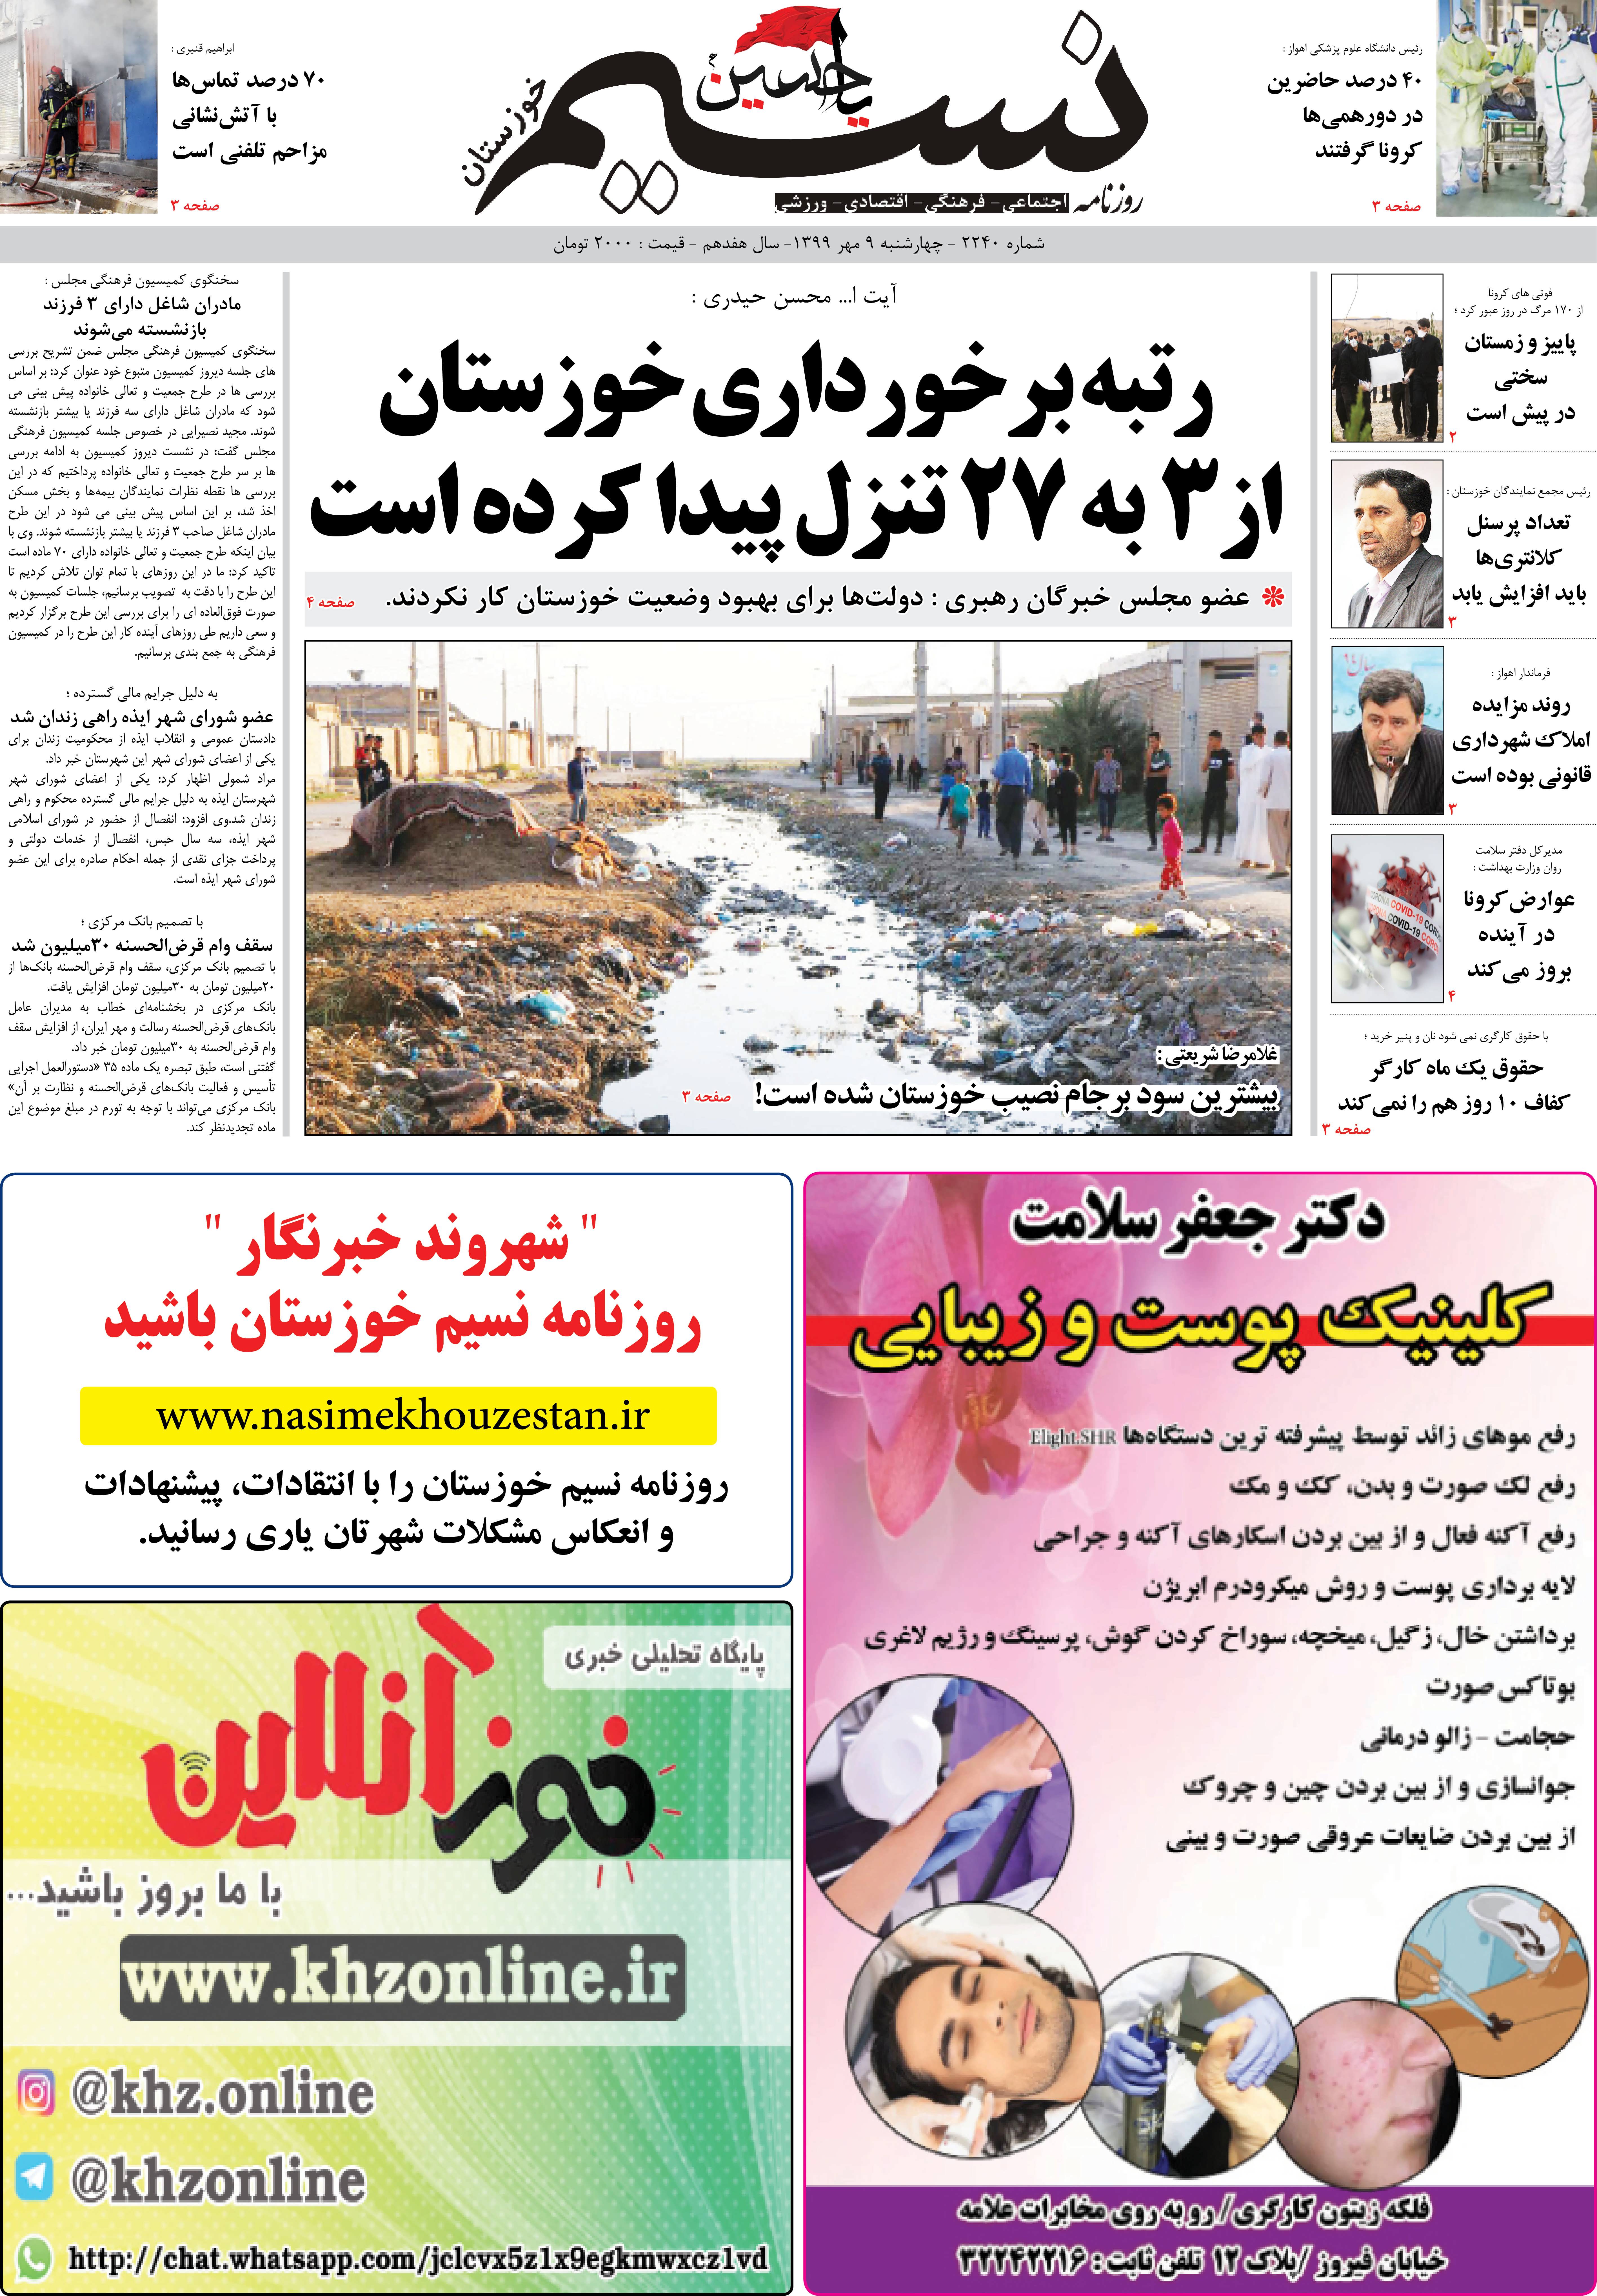 صفحه اصلی روزنامه نسیم شماره 2240 